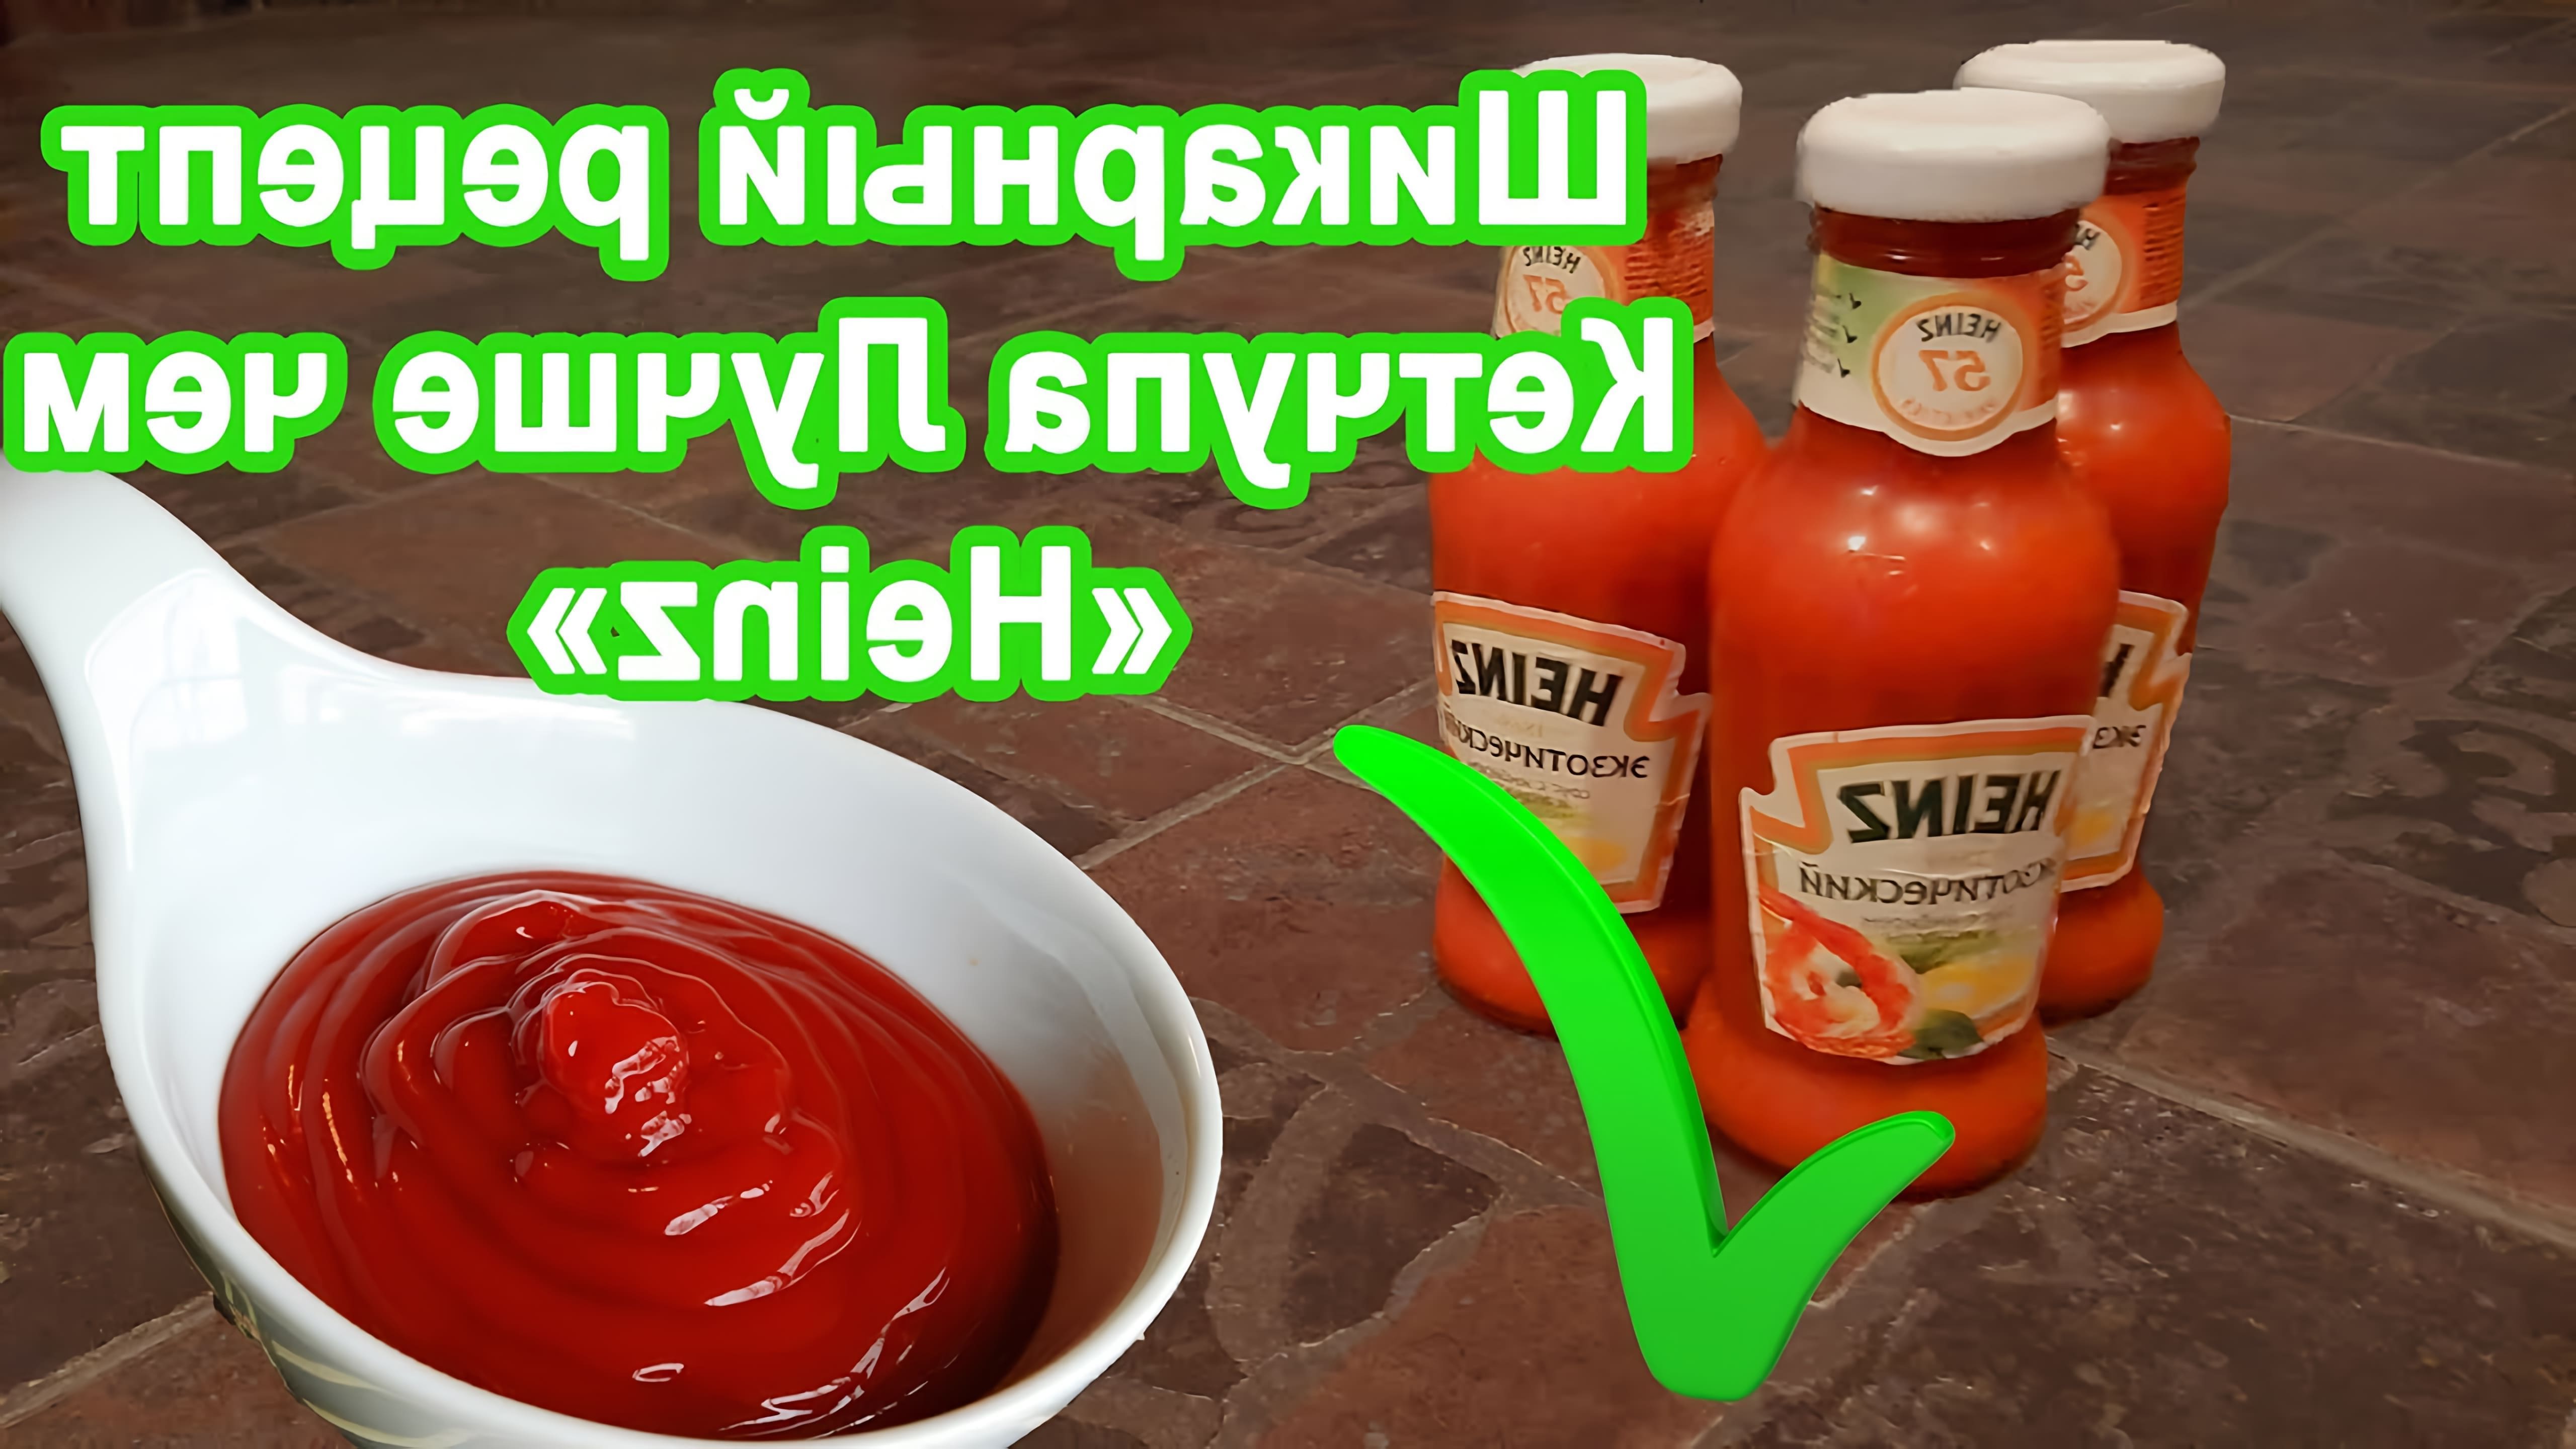 В данном видео демонстрируется процесс приготовления домашнего кетчупа